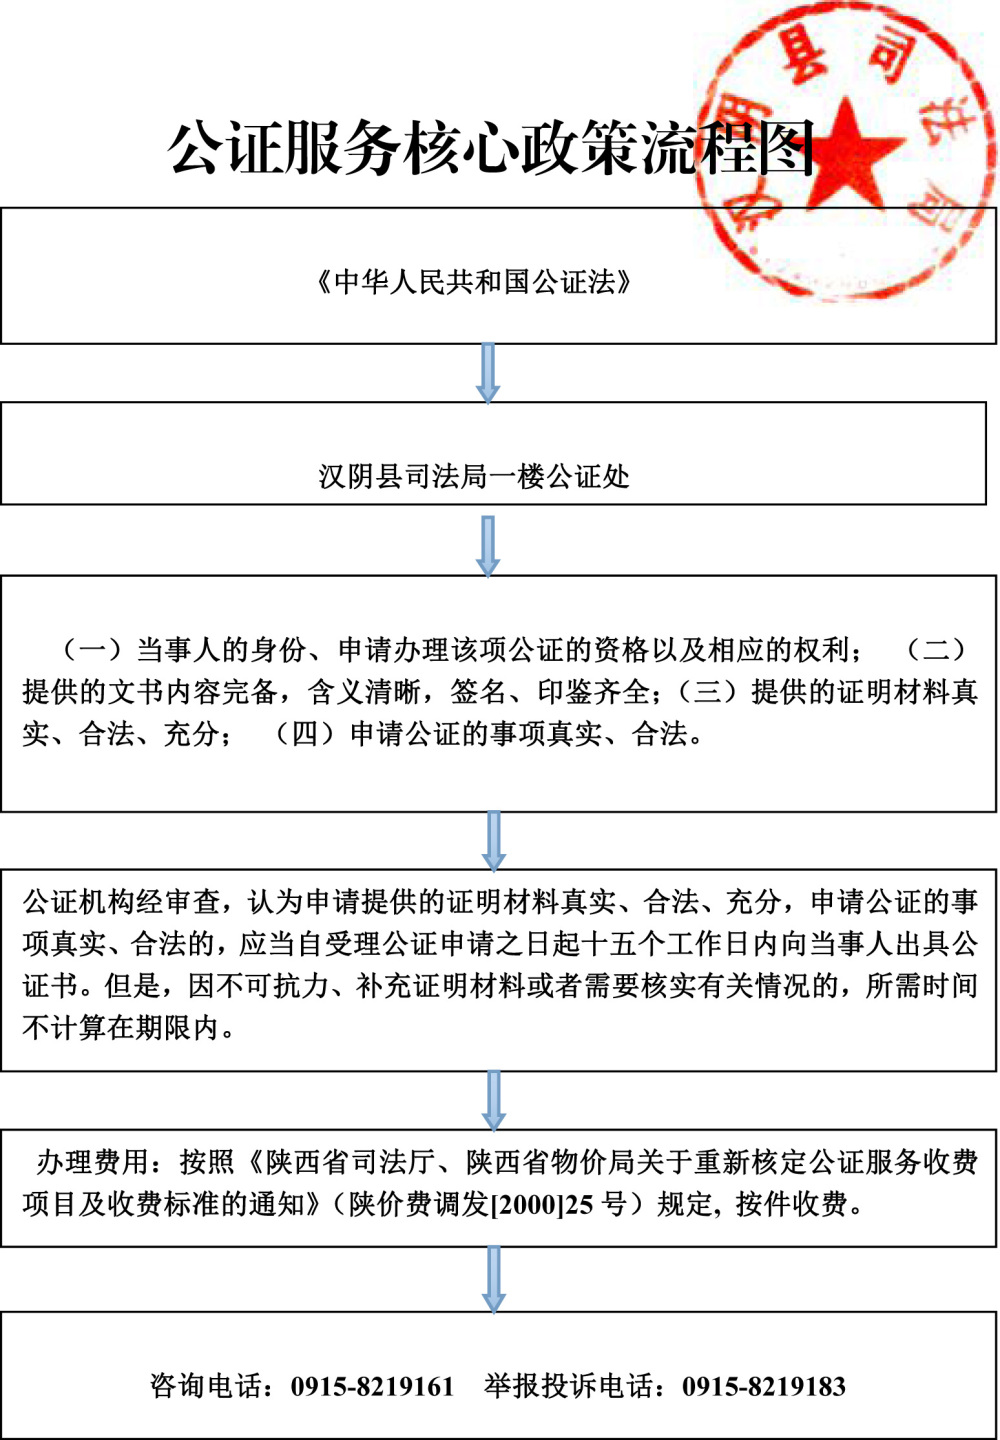 汉阴县司法局--公证处服务核心政策流程图 - 副本.jpg